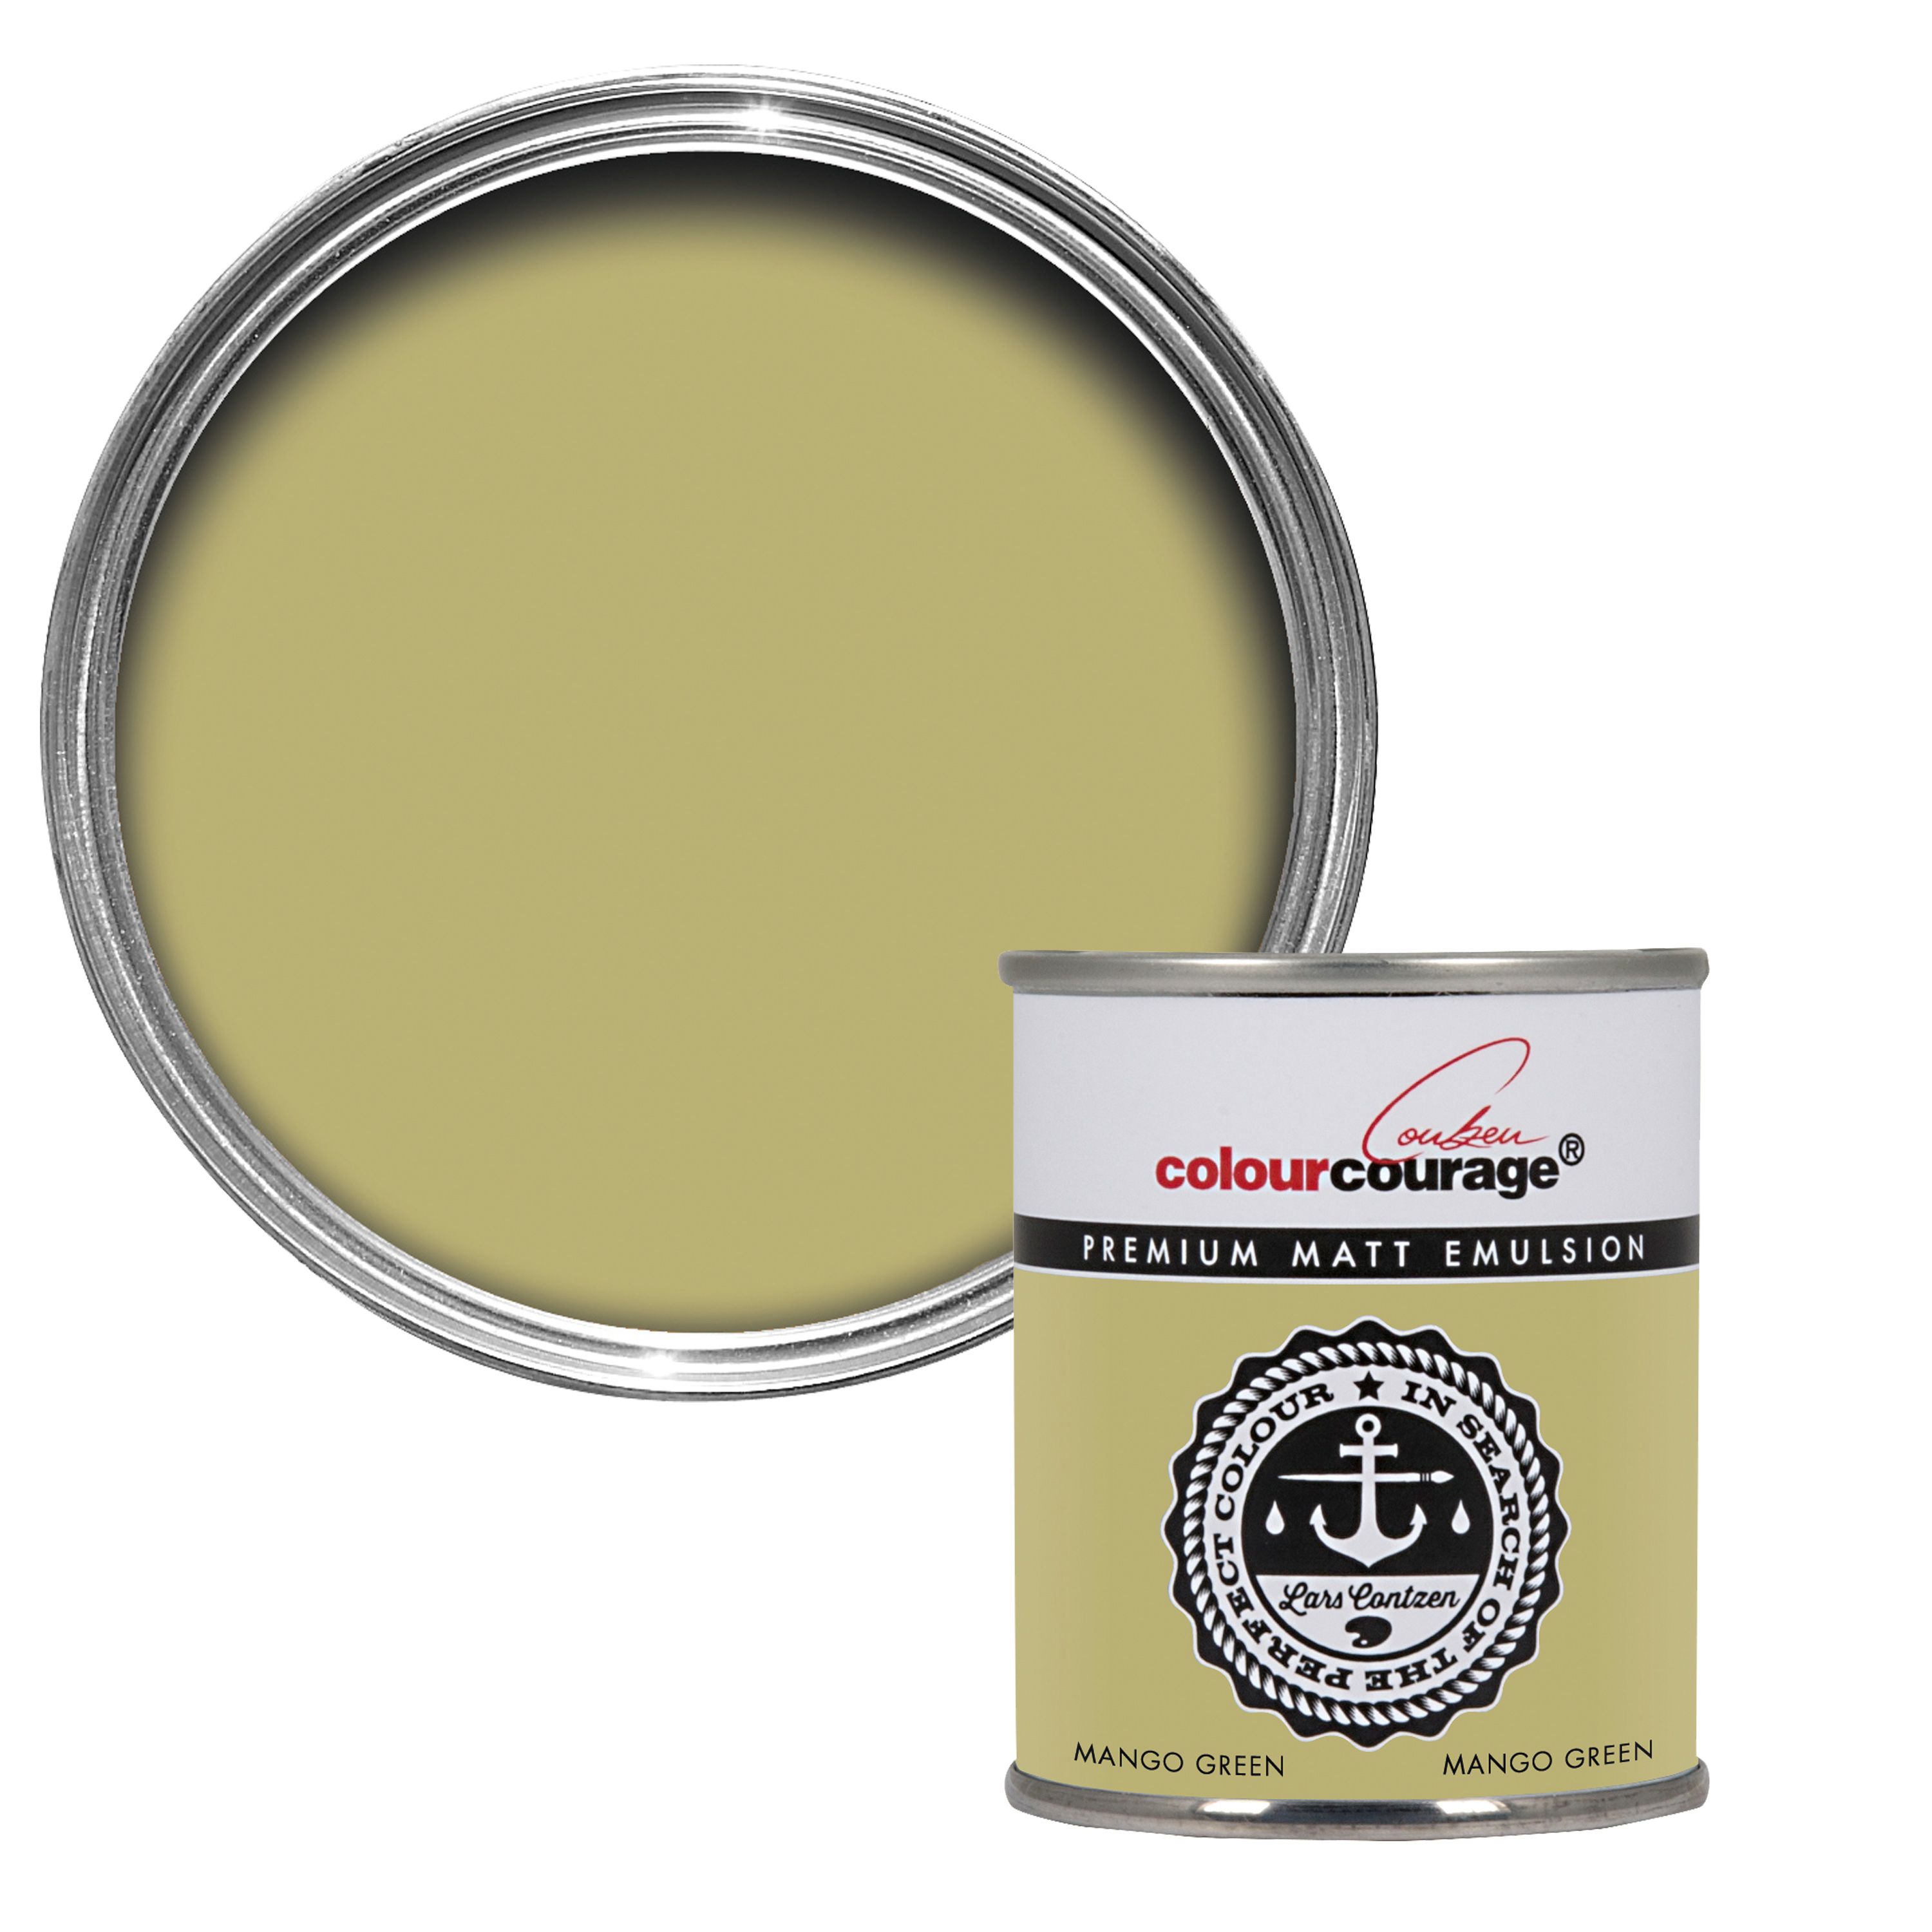 colourcourage Mango green Matt Emulsion paint 125ml Tester pot